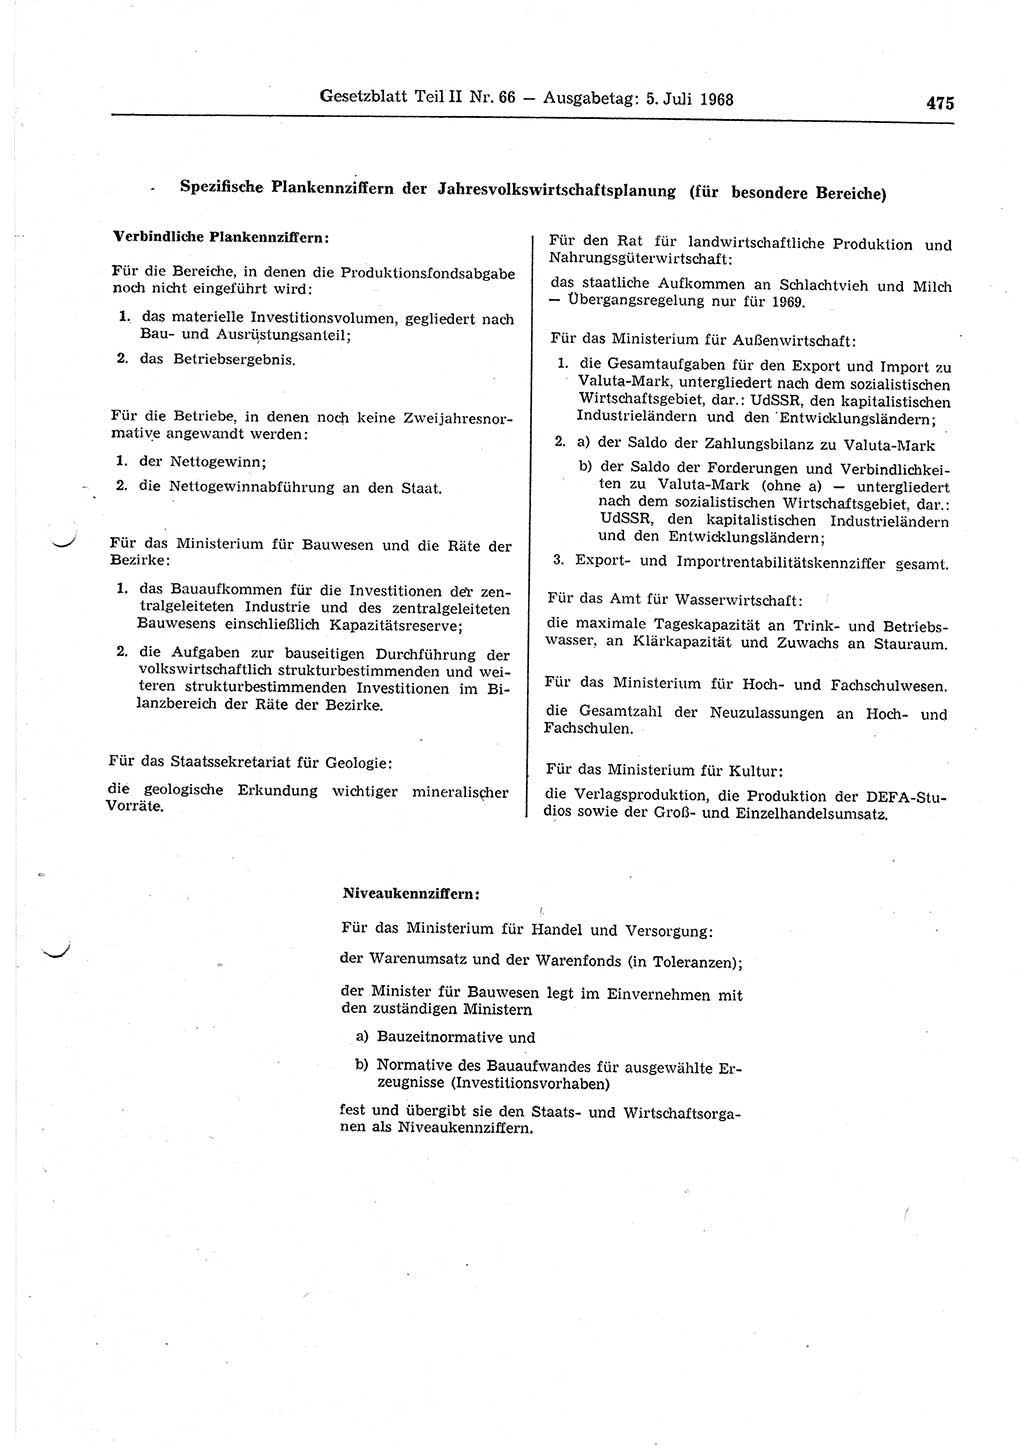 Gesetzblatt (GBl.) der Deutschen Demokratischen Republik (DDR) Teil ⅠⅠ 1968, Seite 475 (GBl. DDR ⅠⅠ 1968, S. 475)